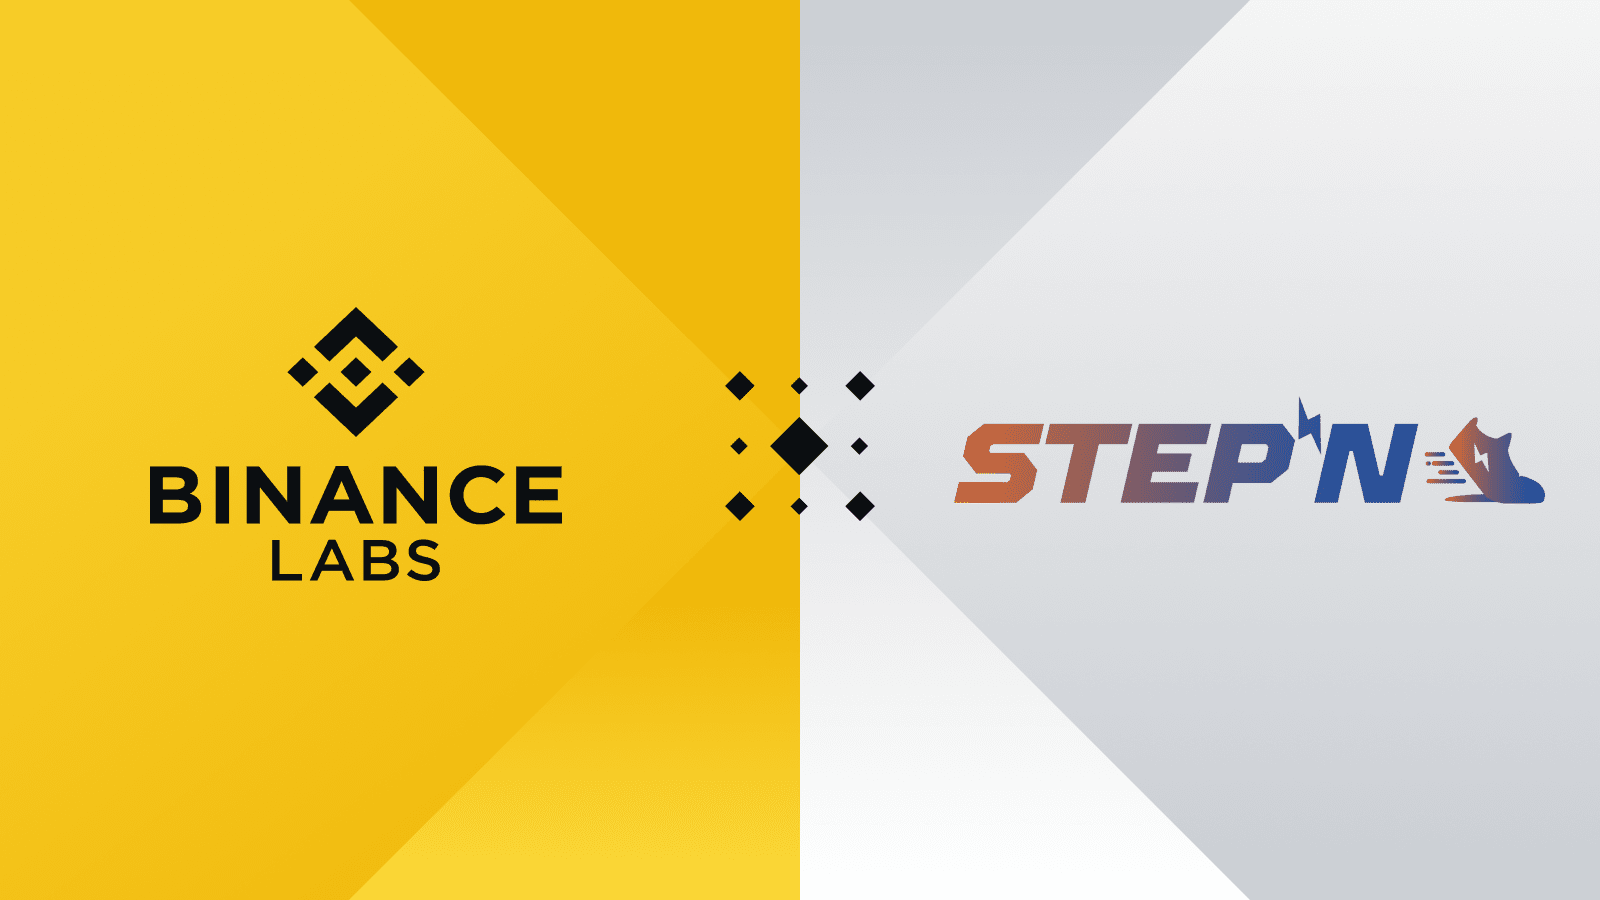 تعلن Binance Labs عن استثمار استراتيجي في STEPN